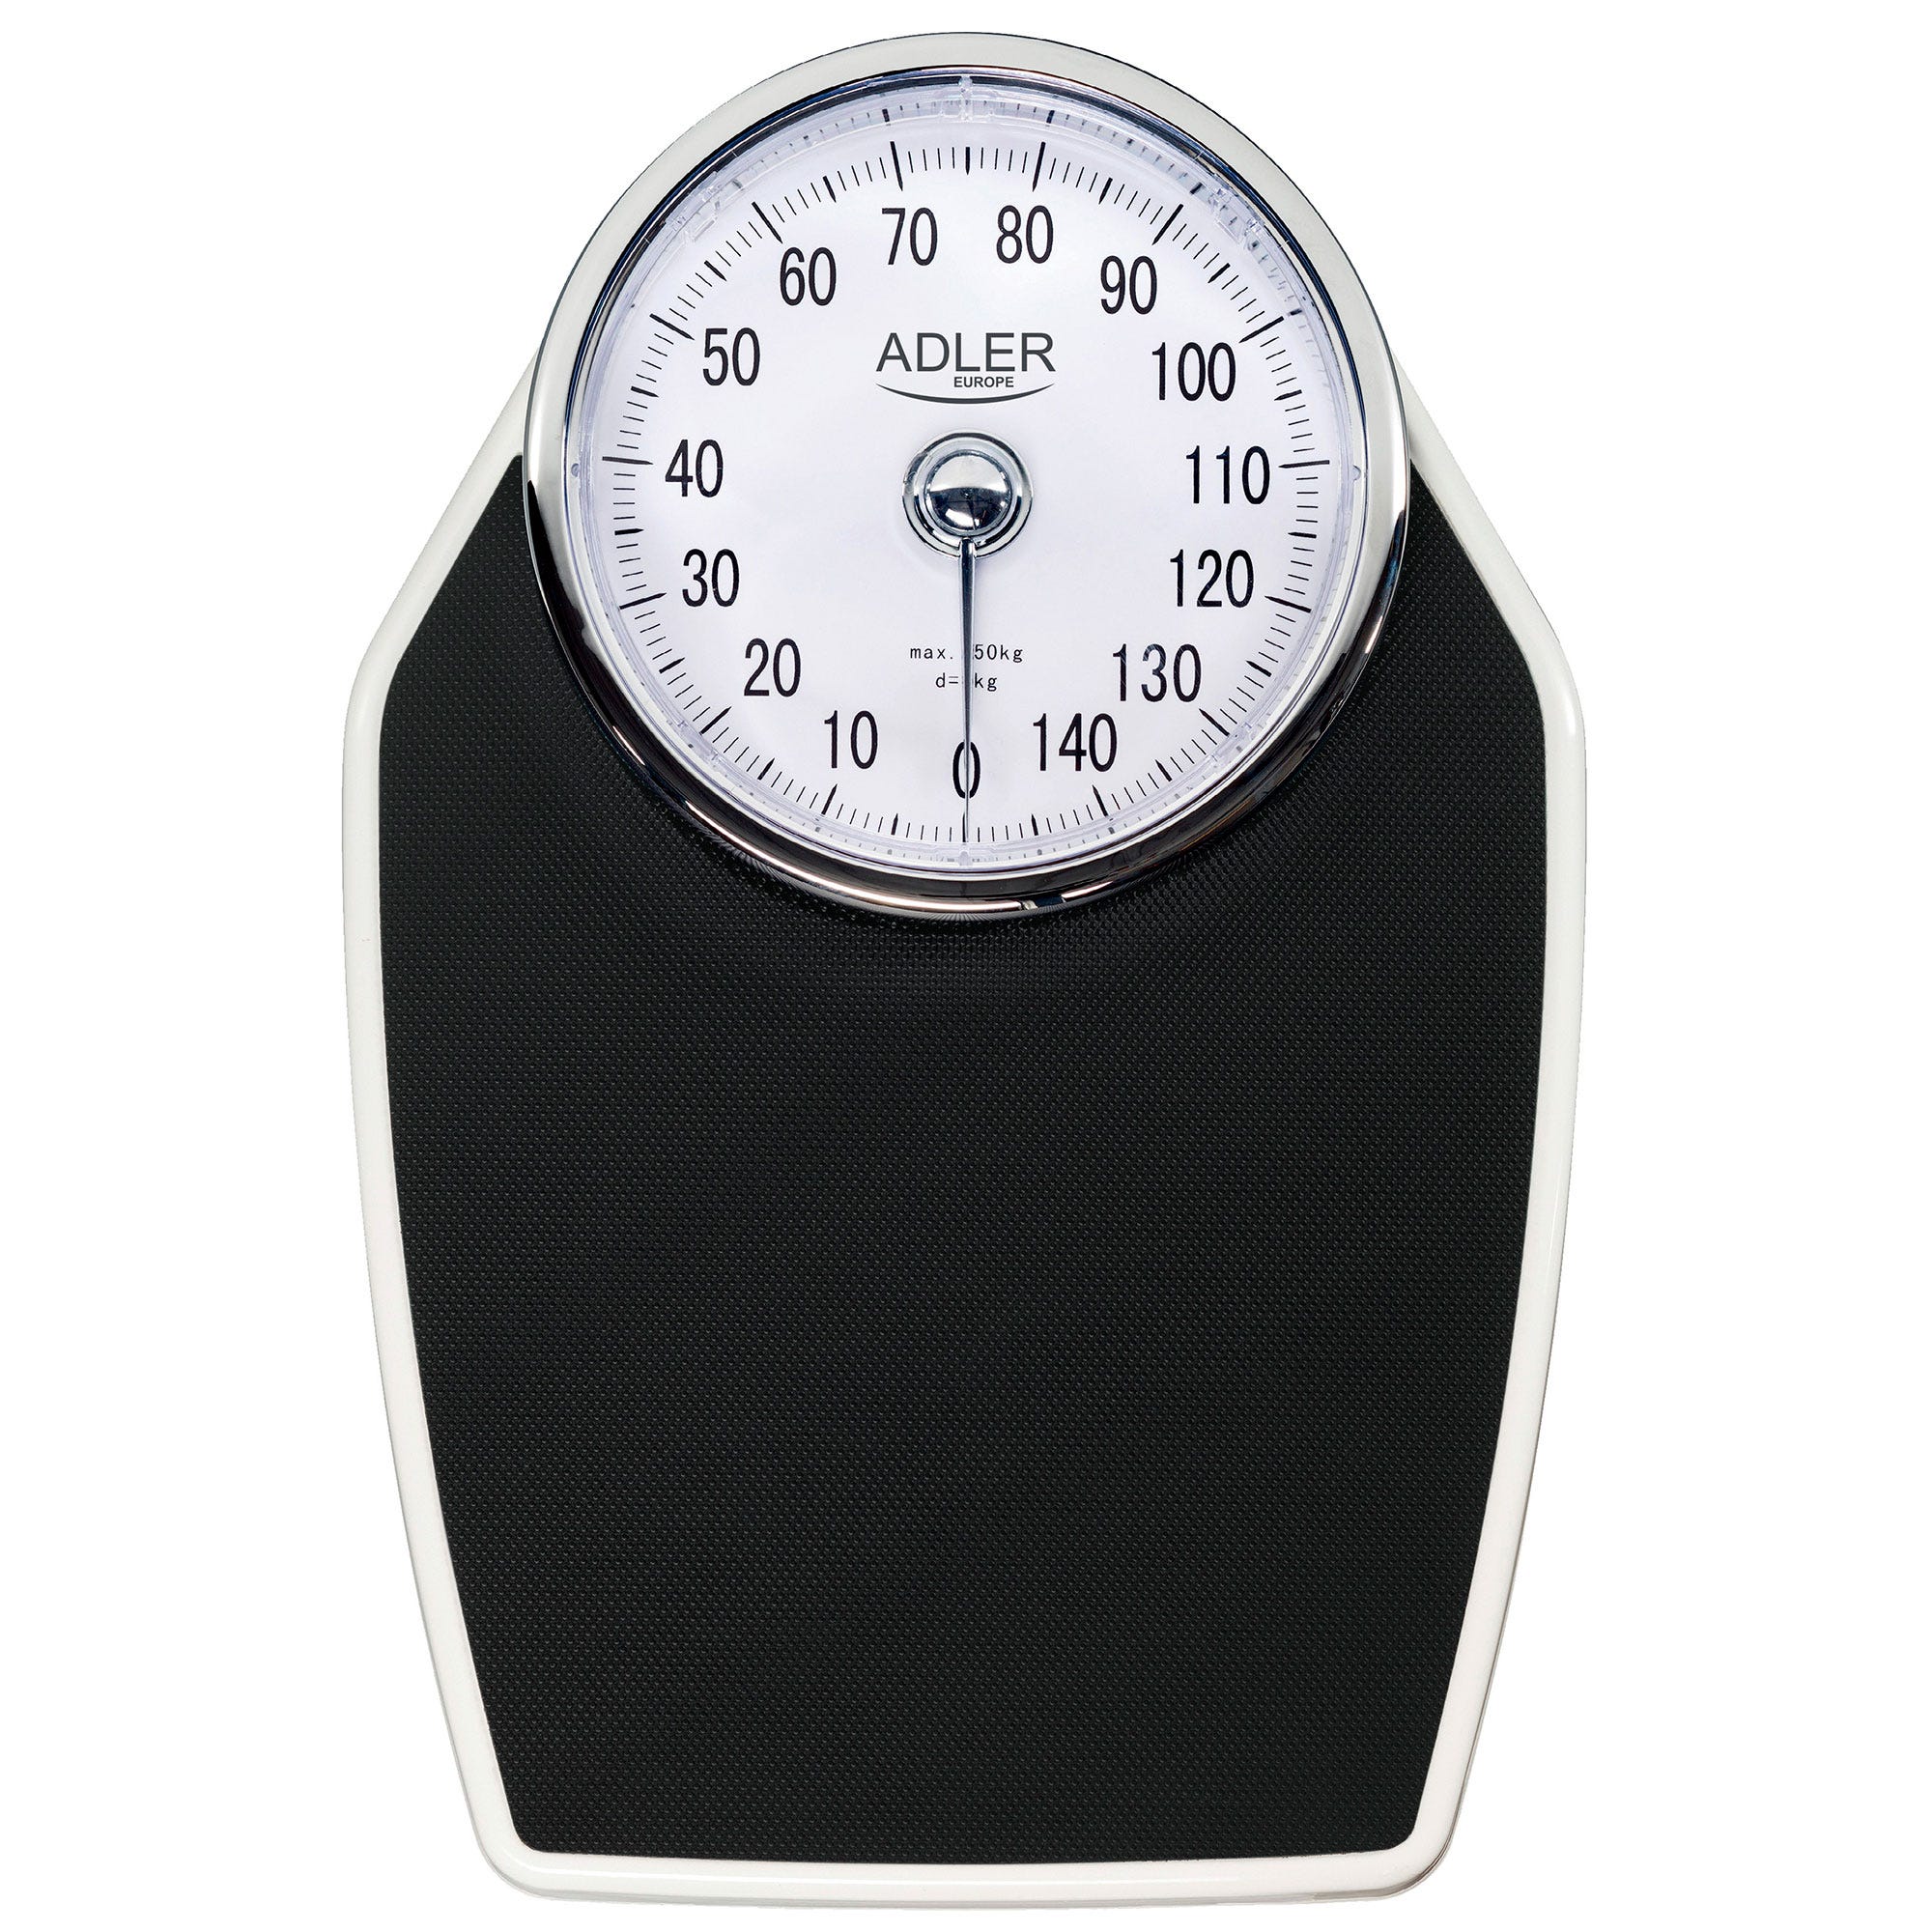 Tradineur - Bascula analógica de baño - Peso Máximo 130 kg - Control de peso  - 4,5 x 26,5 x 24 cm - Color Aleatorio